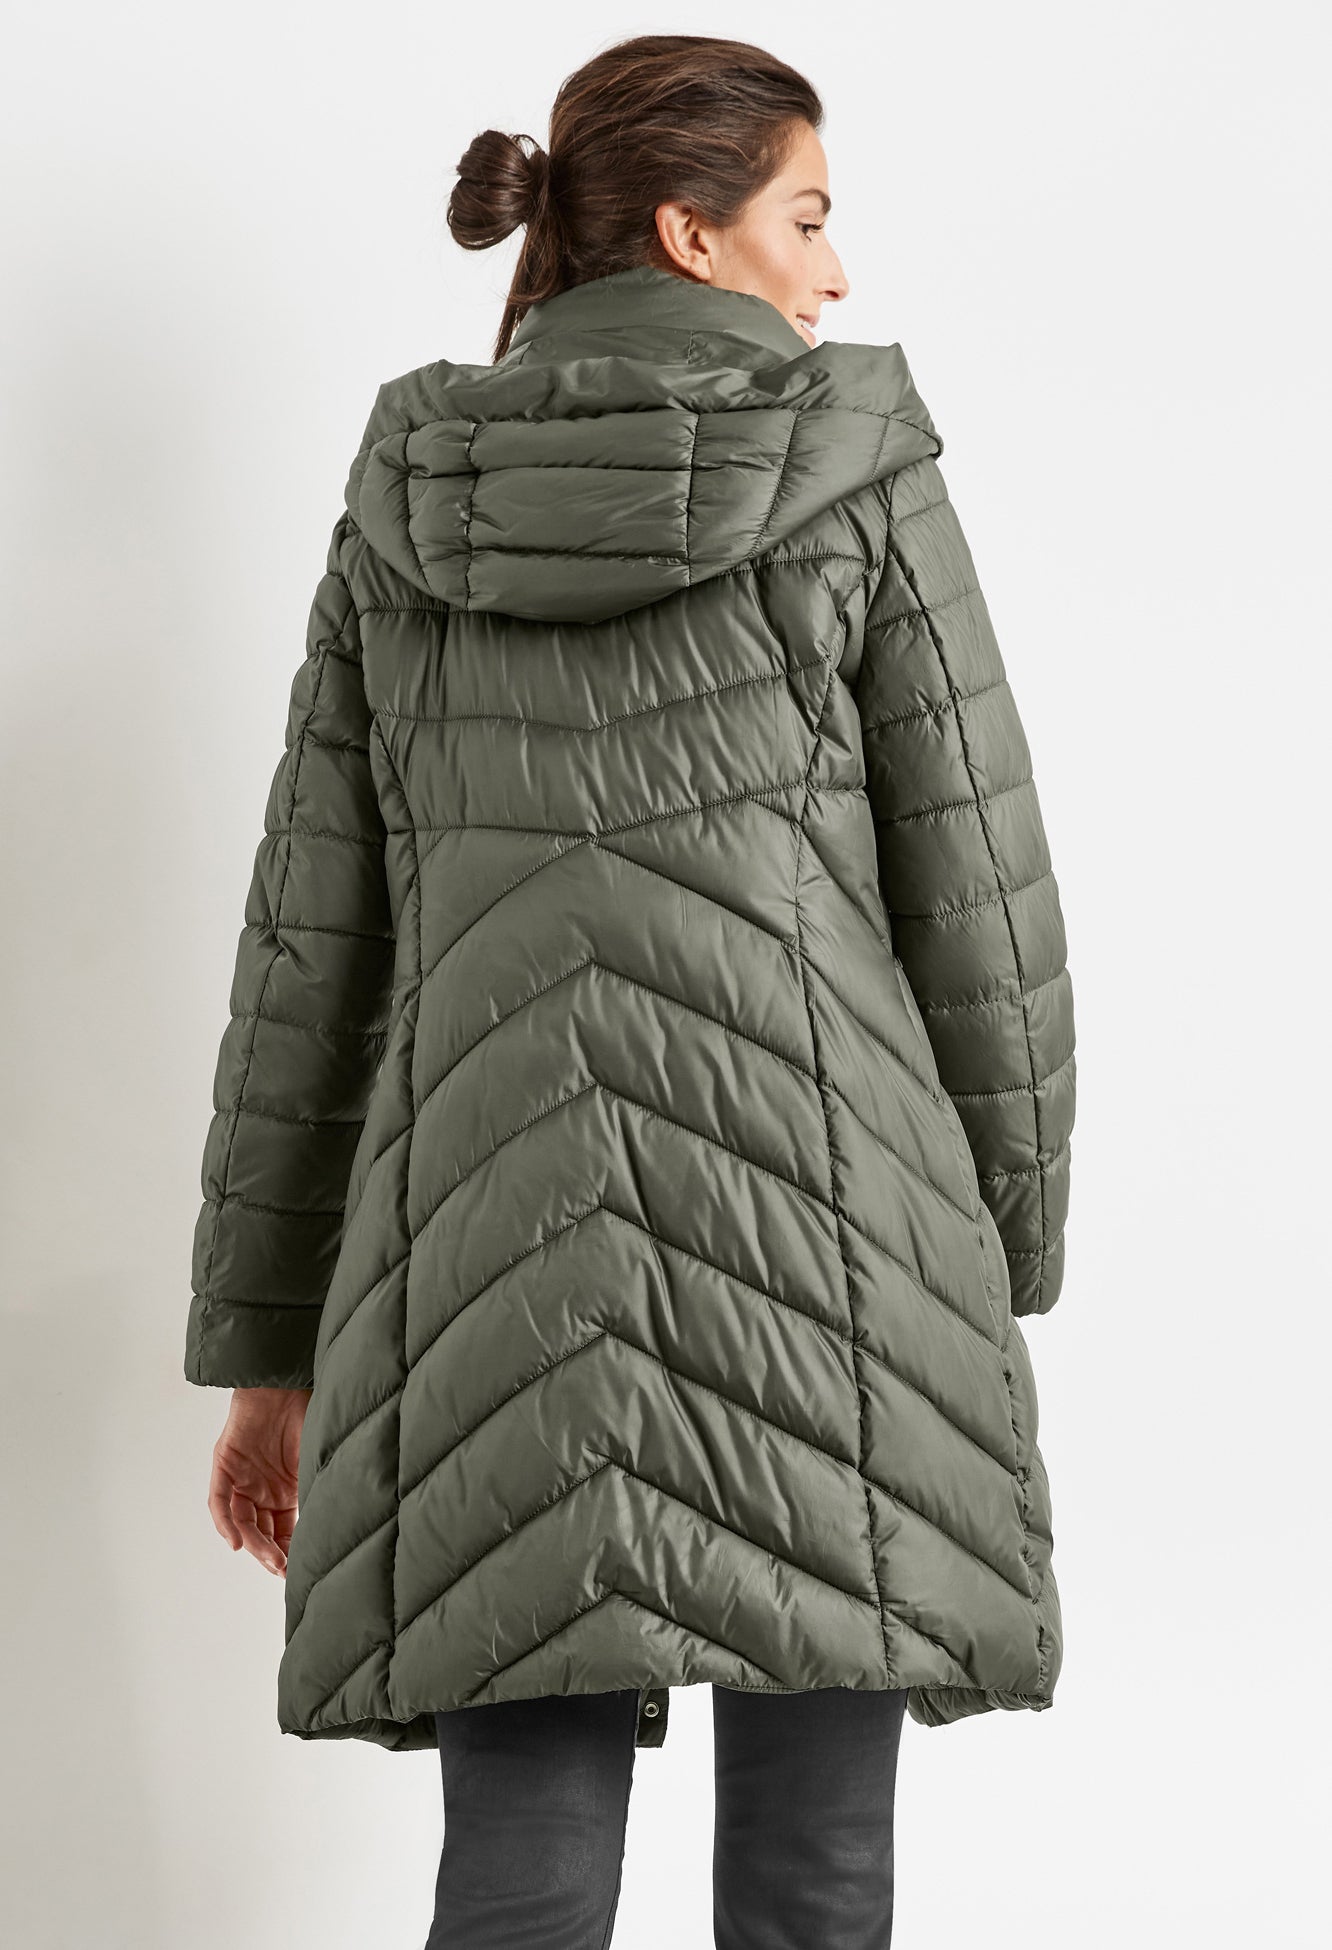 Coat with zigzag quilting